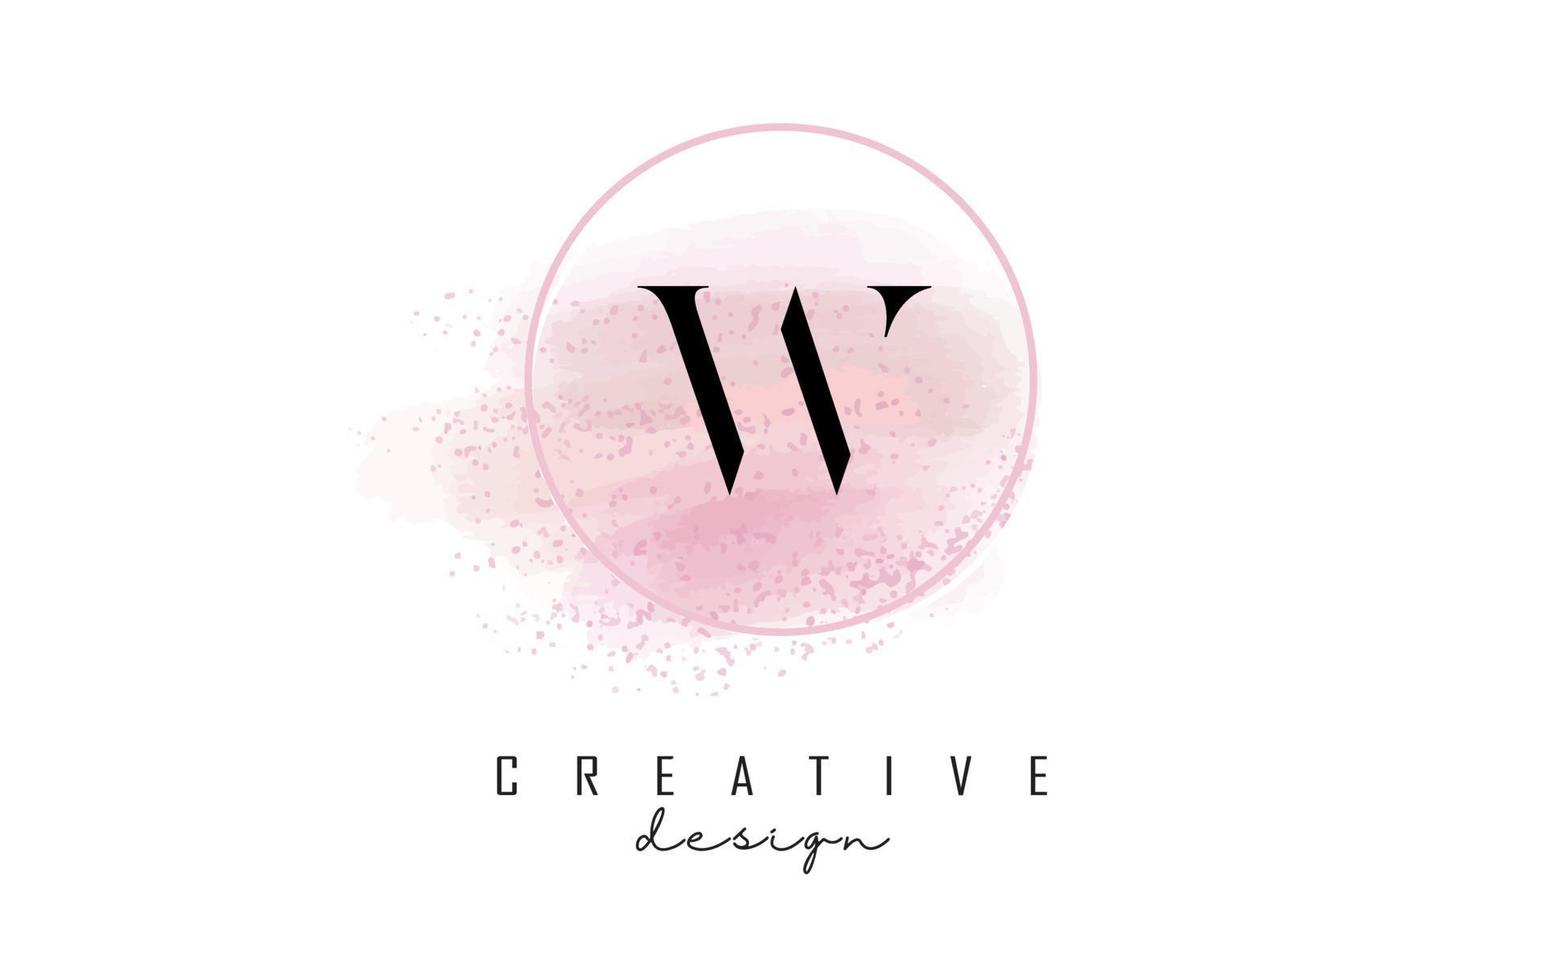 création de logo de lettre w avec cadre rond pailleté et fond aquarelle rose. vecteur